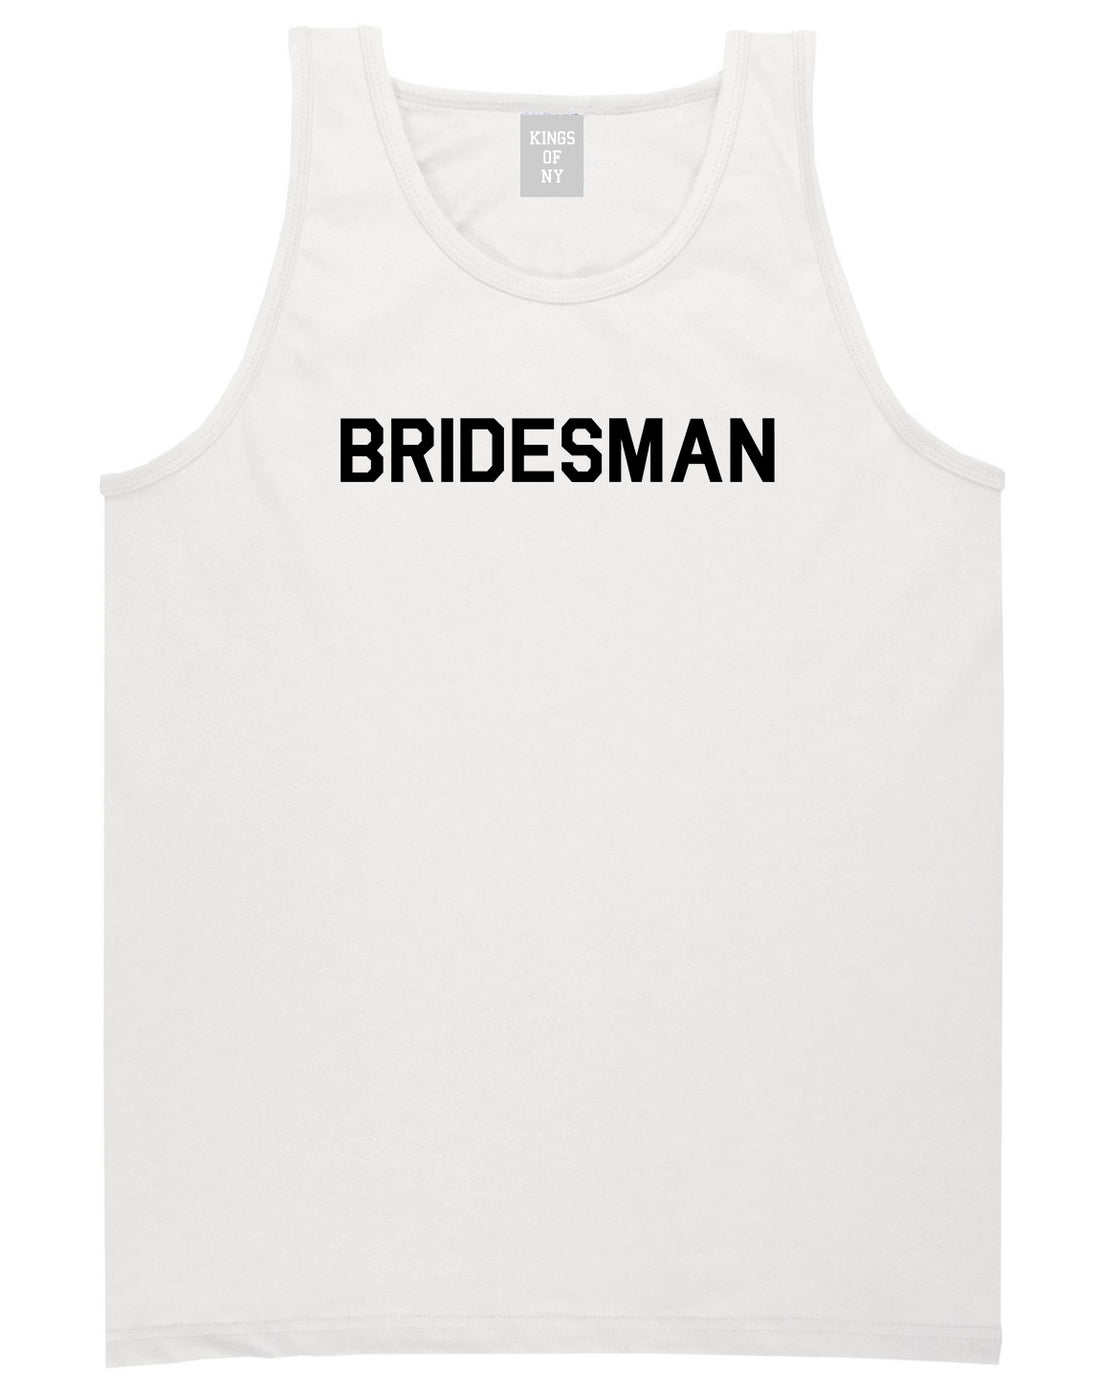 Bridesman Bachlorette Bachelor Party Mens Tank Top Shirt White